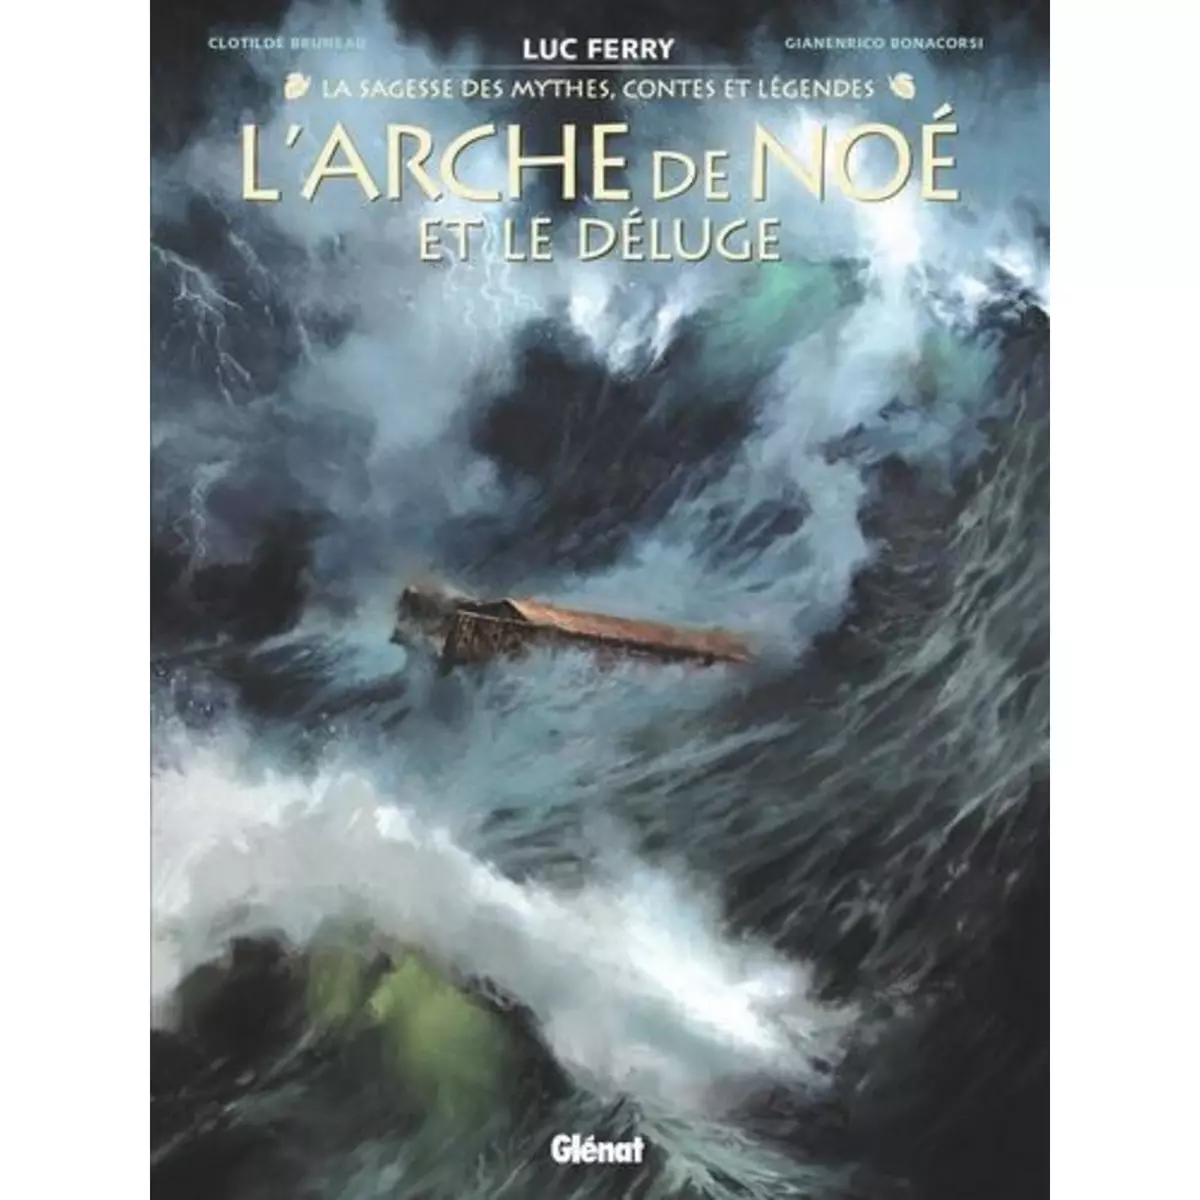  L'ARCHE DE NOE ET LE DELUGE, Ferry Luc